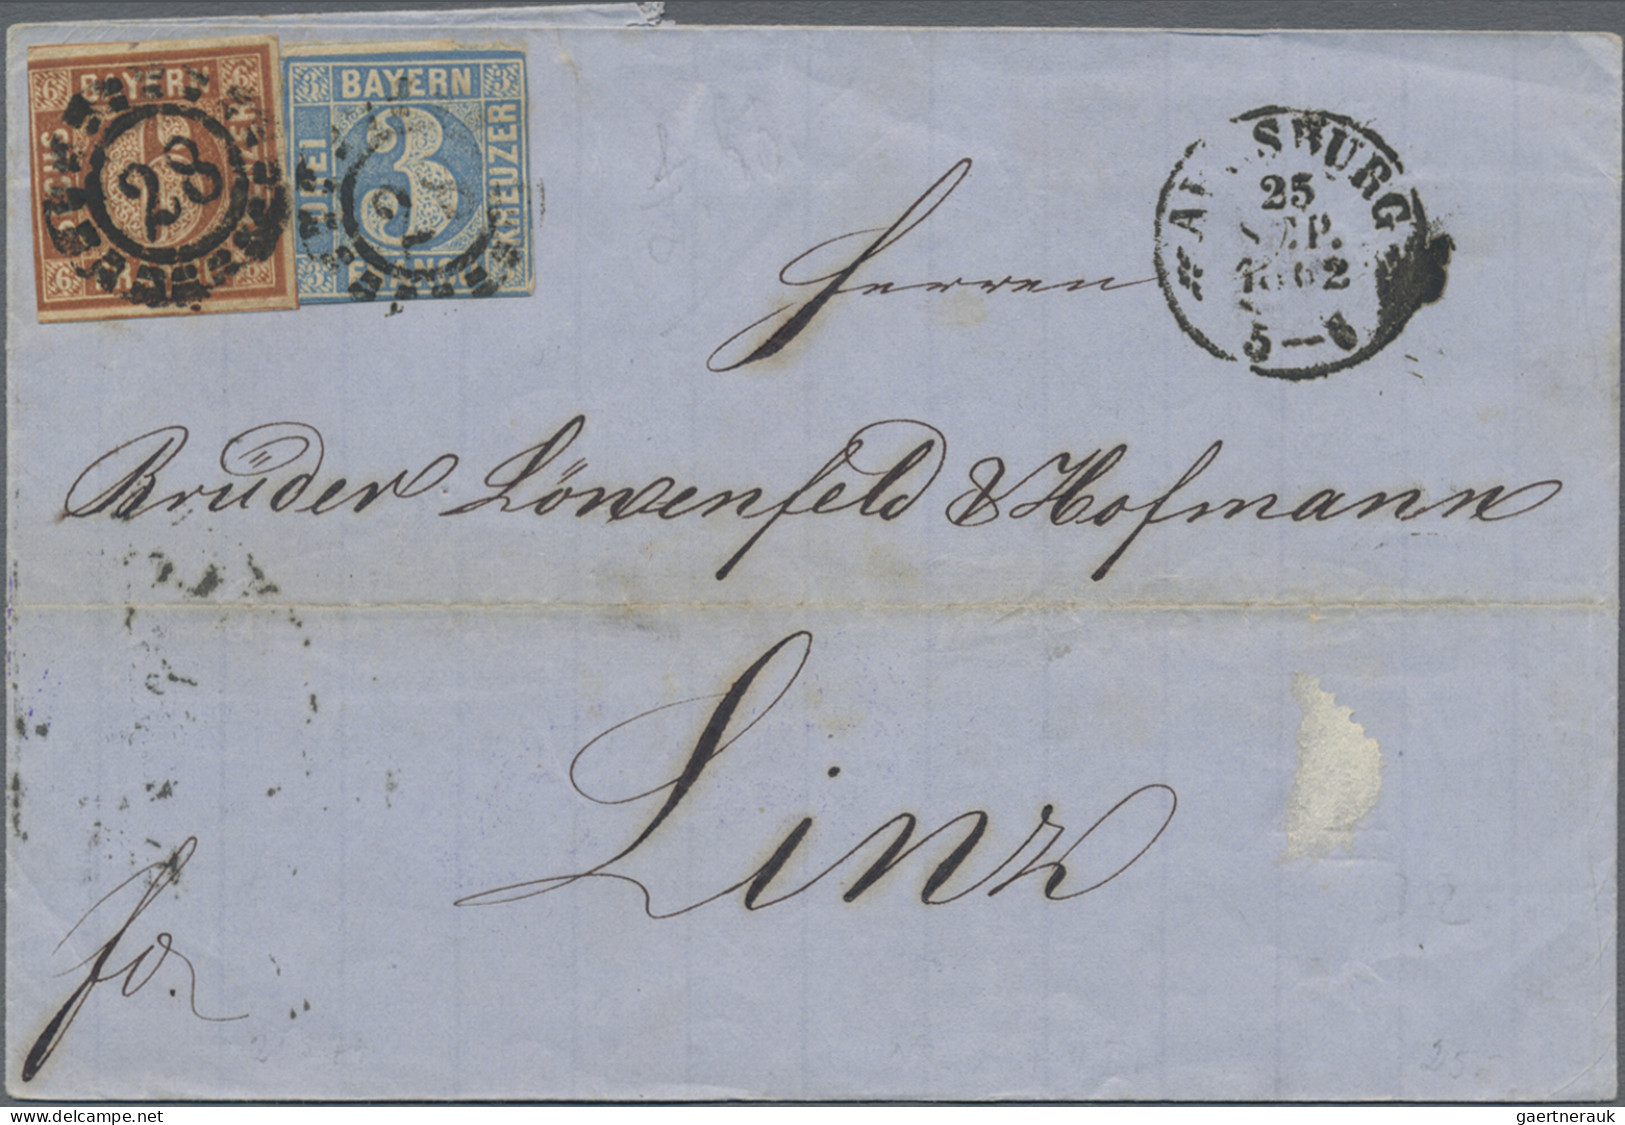 Bayern - Marken und Briefe: 1848/1873, Partie von 28 Briefen der Kreuzerzeit, me